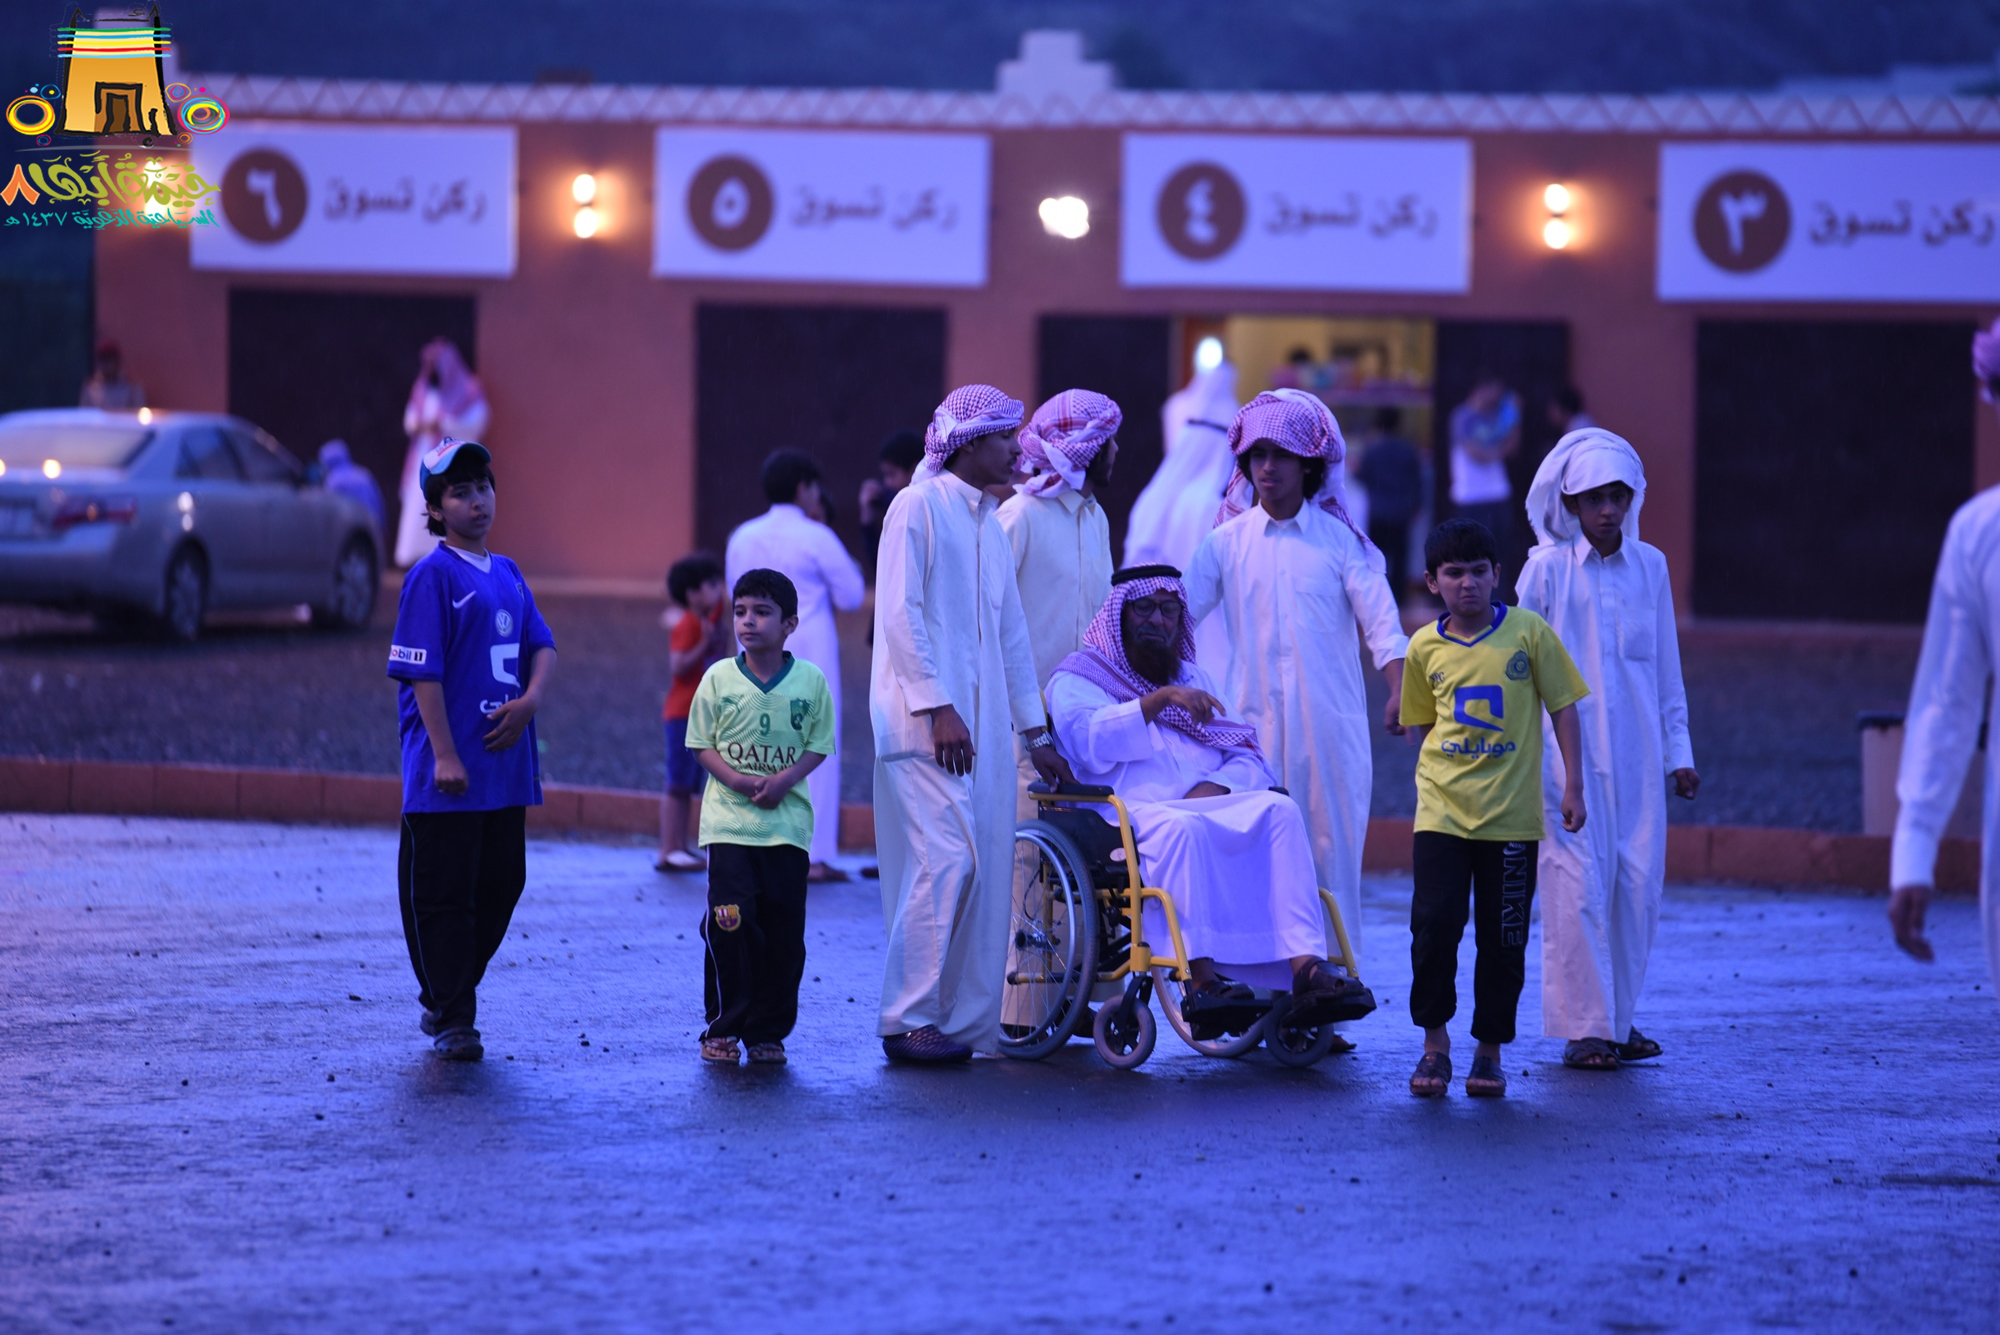 برعاية “المواطن”.. حضور كبير وسط زخات المطر لفعاليات الخيمة الدعويّة بأبها